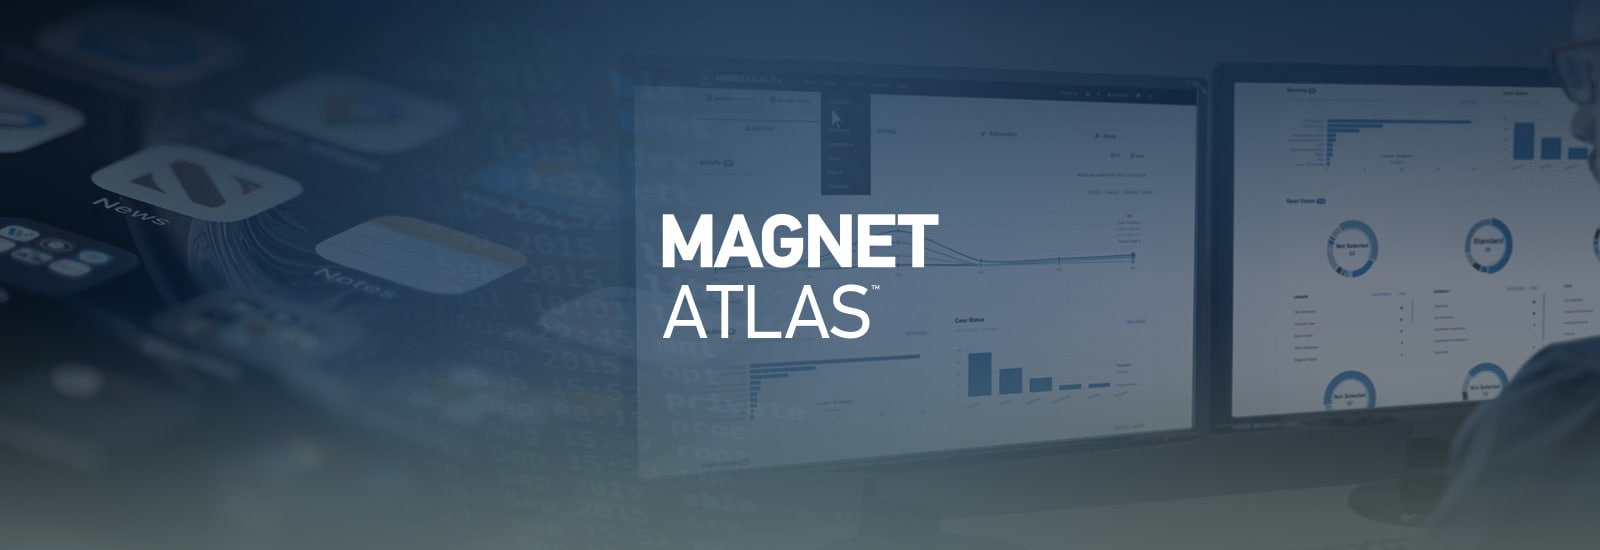 Decorative header image for Magnet ATLAS.